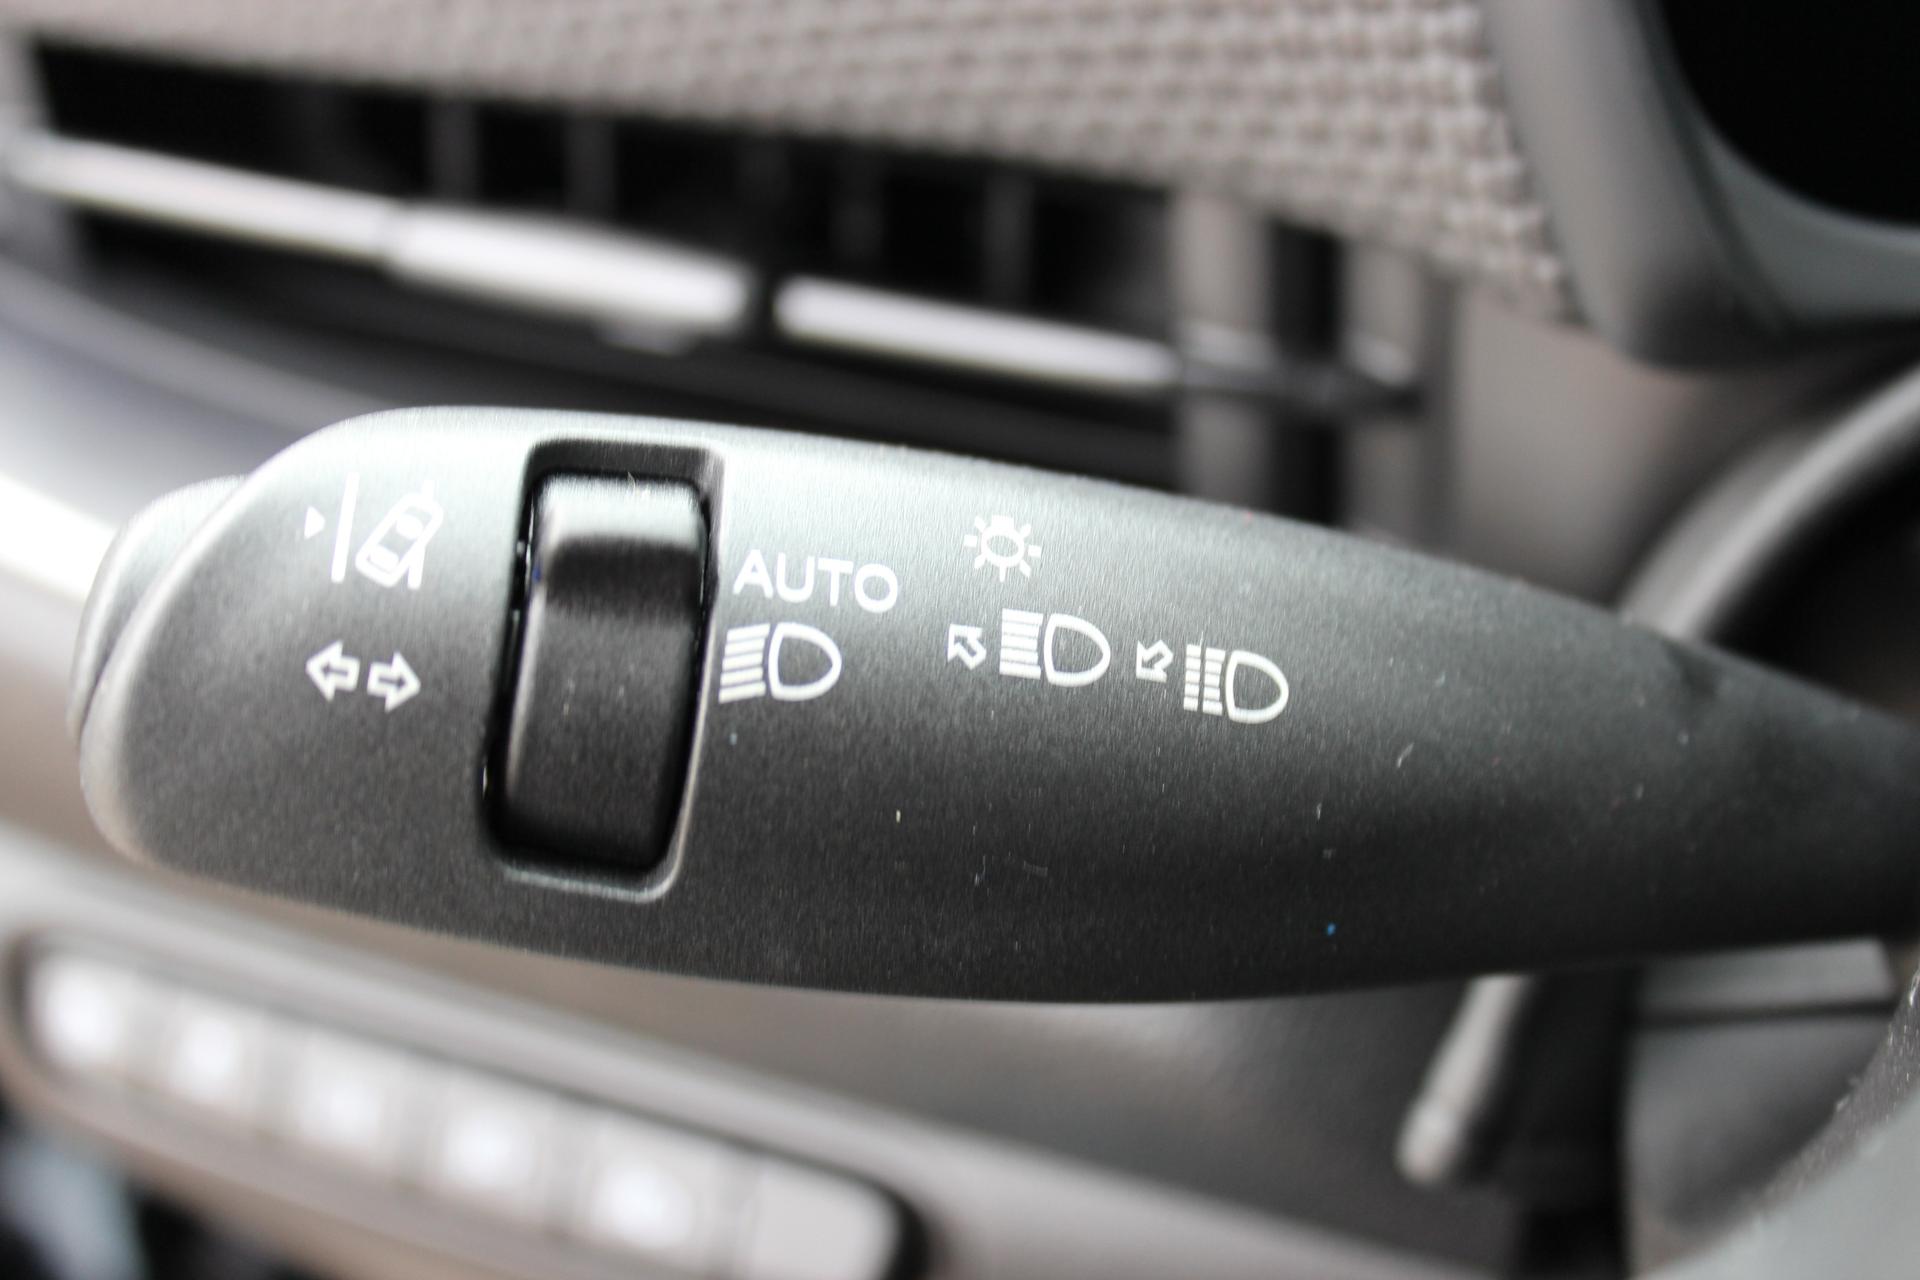 Auto Elektronischer Rückspiegel HD Zusatzspiegel Rechts Toter Winkel  Zusatzkamera (AHD Signal)